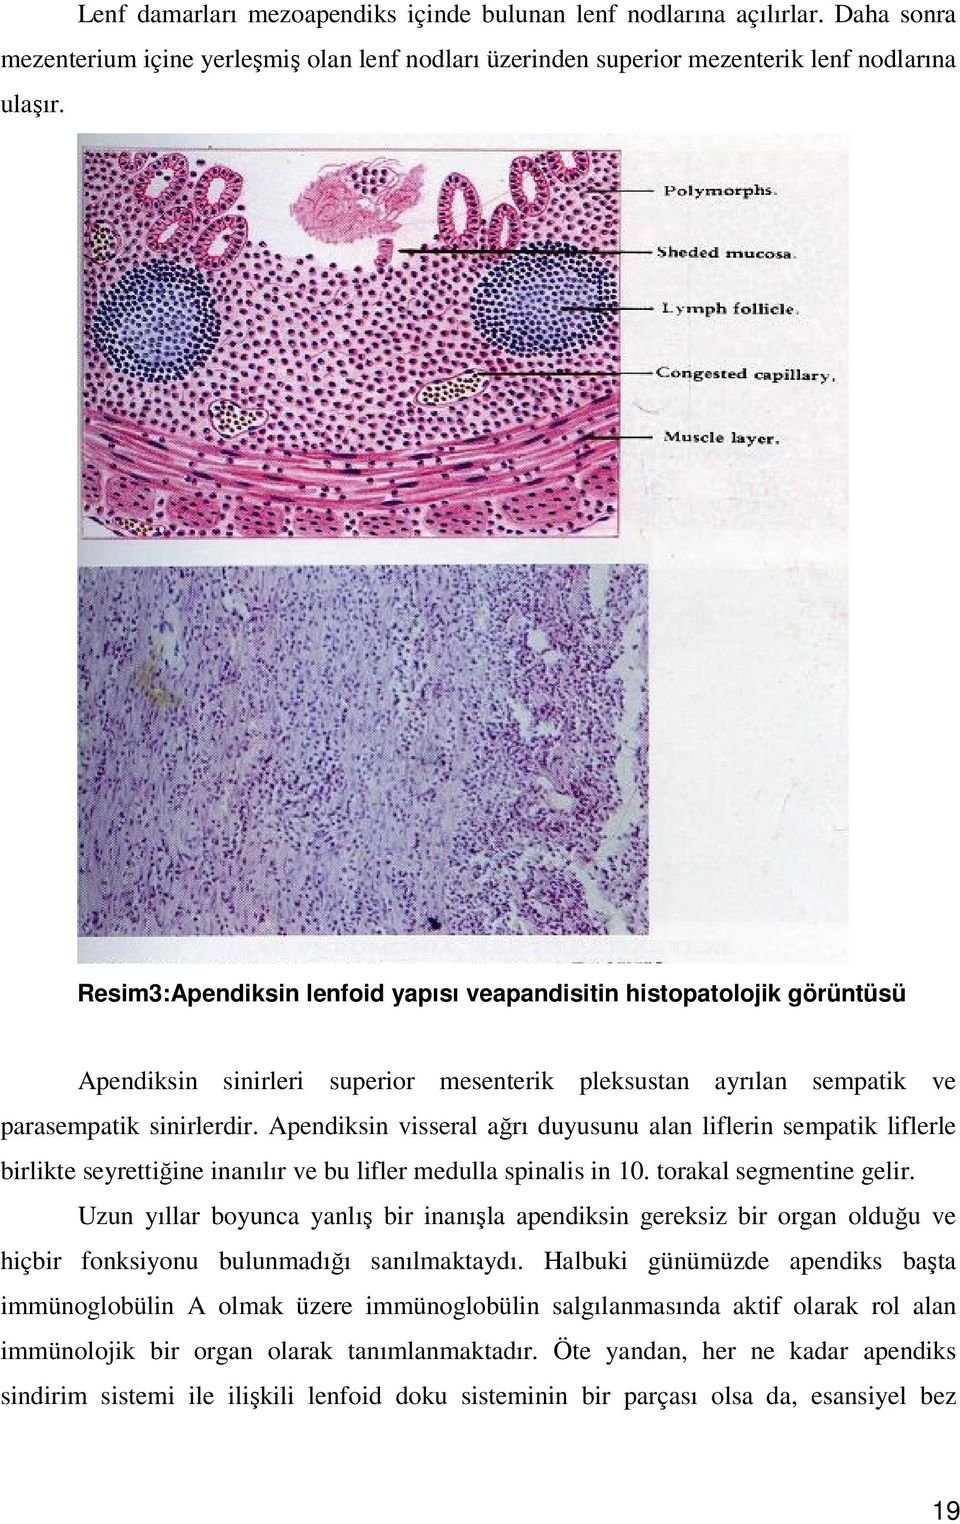 Apendiksin visseral ağrı duyusunu alan liflerin sempatik liflerle birlikte seyrettiğine inanılır ve bu lifler medulla spinalis in 10. torakal segmentine gelir.